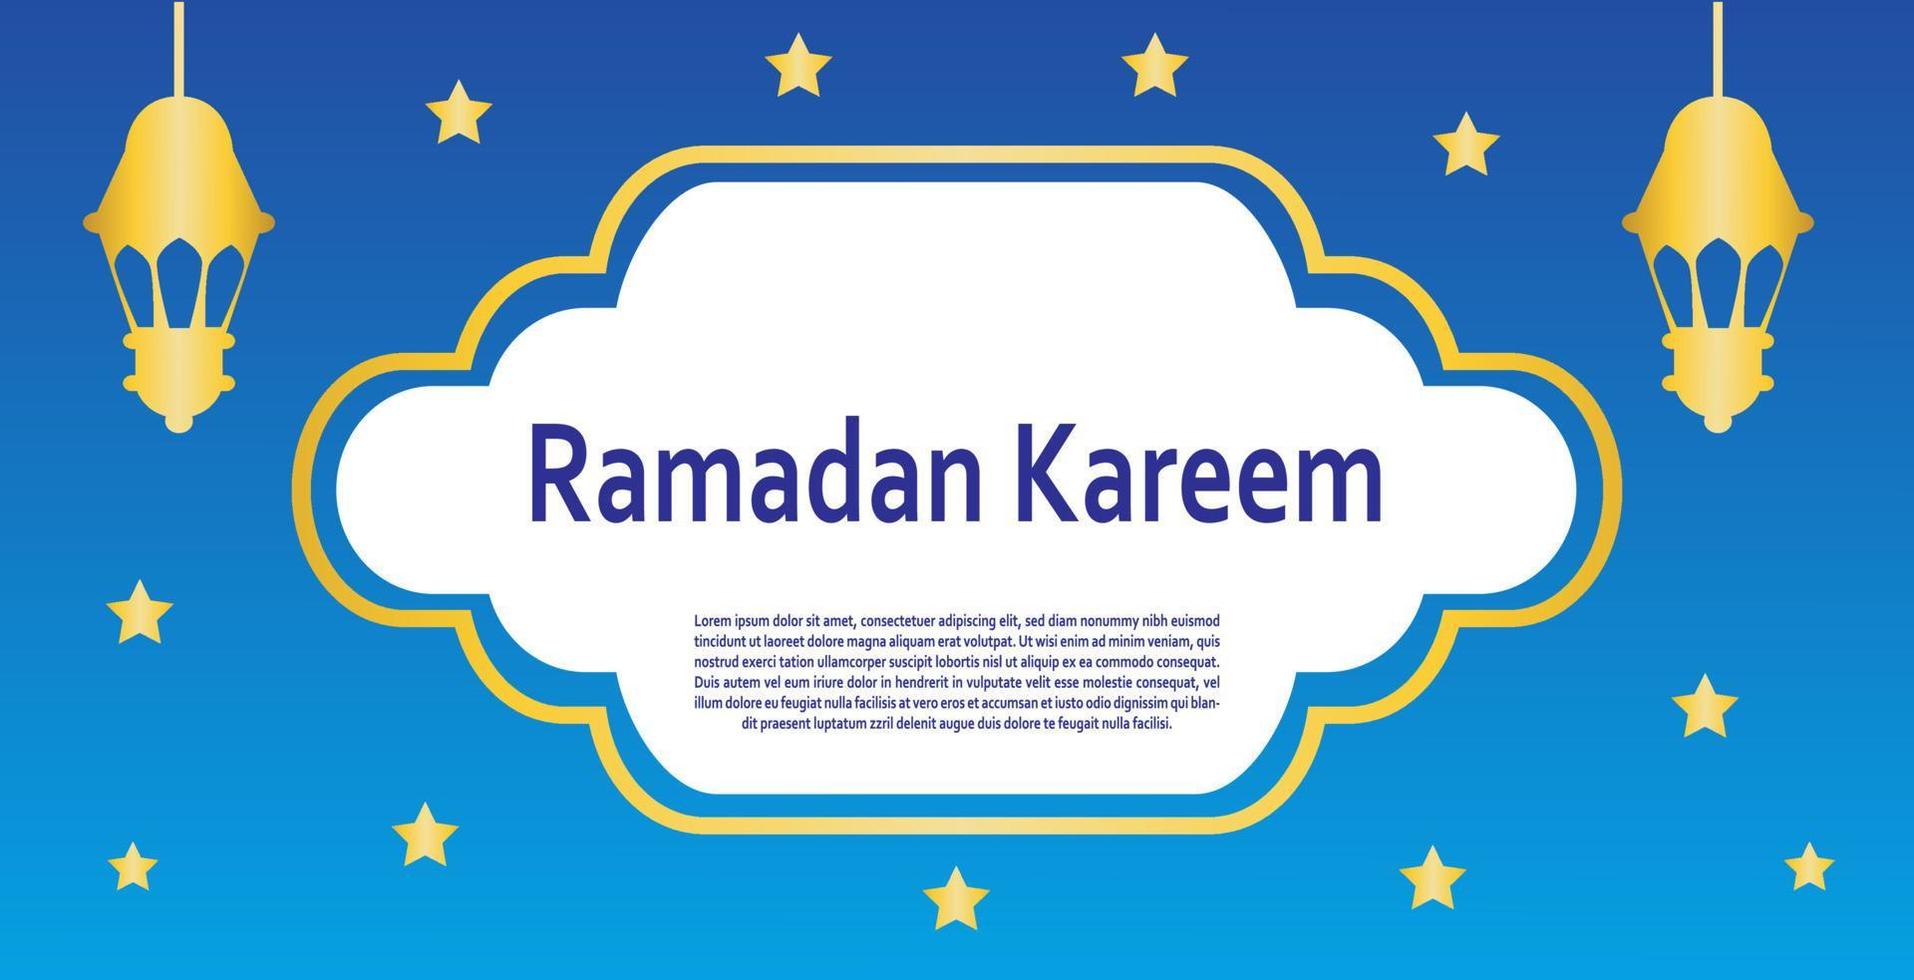 Ramadan Kareem banner design in blue color. Ramadan Kareem greeting card designs. vector